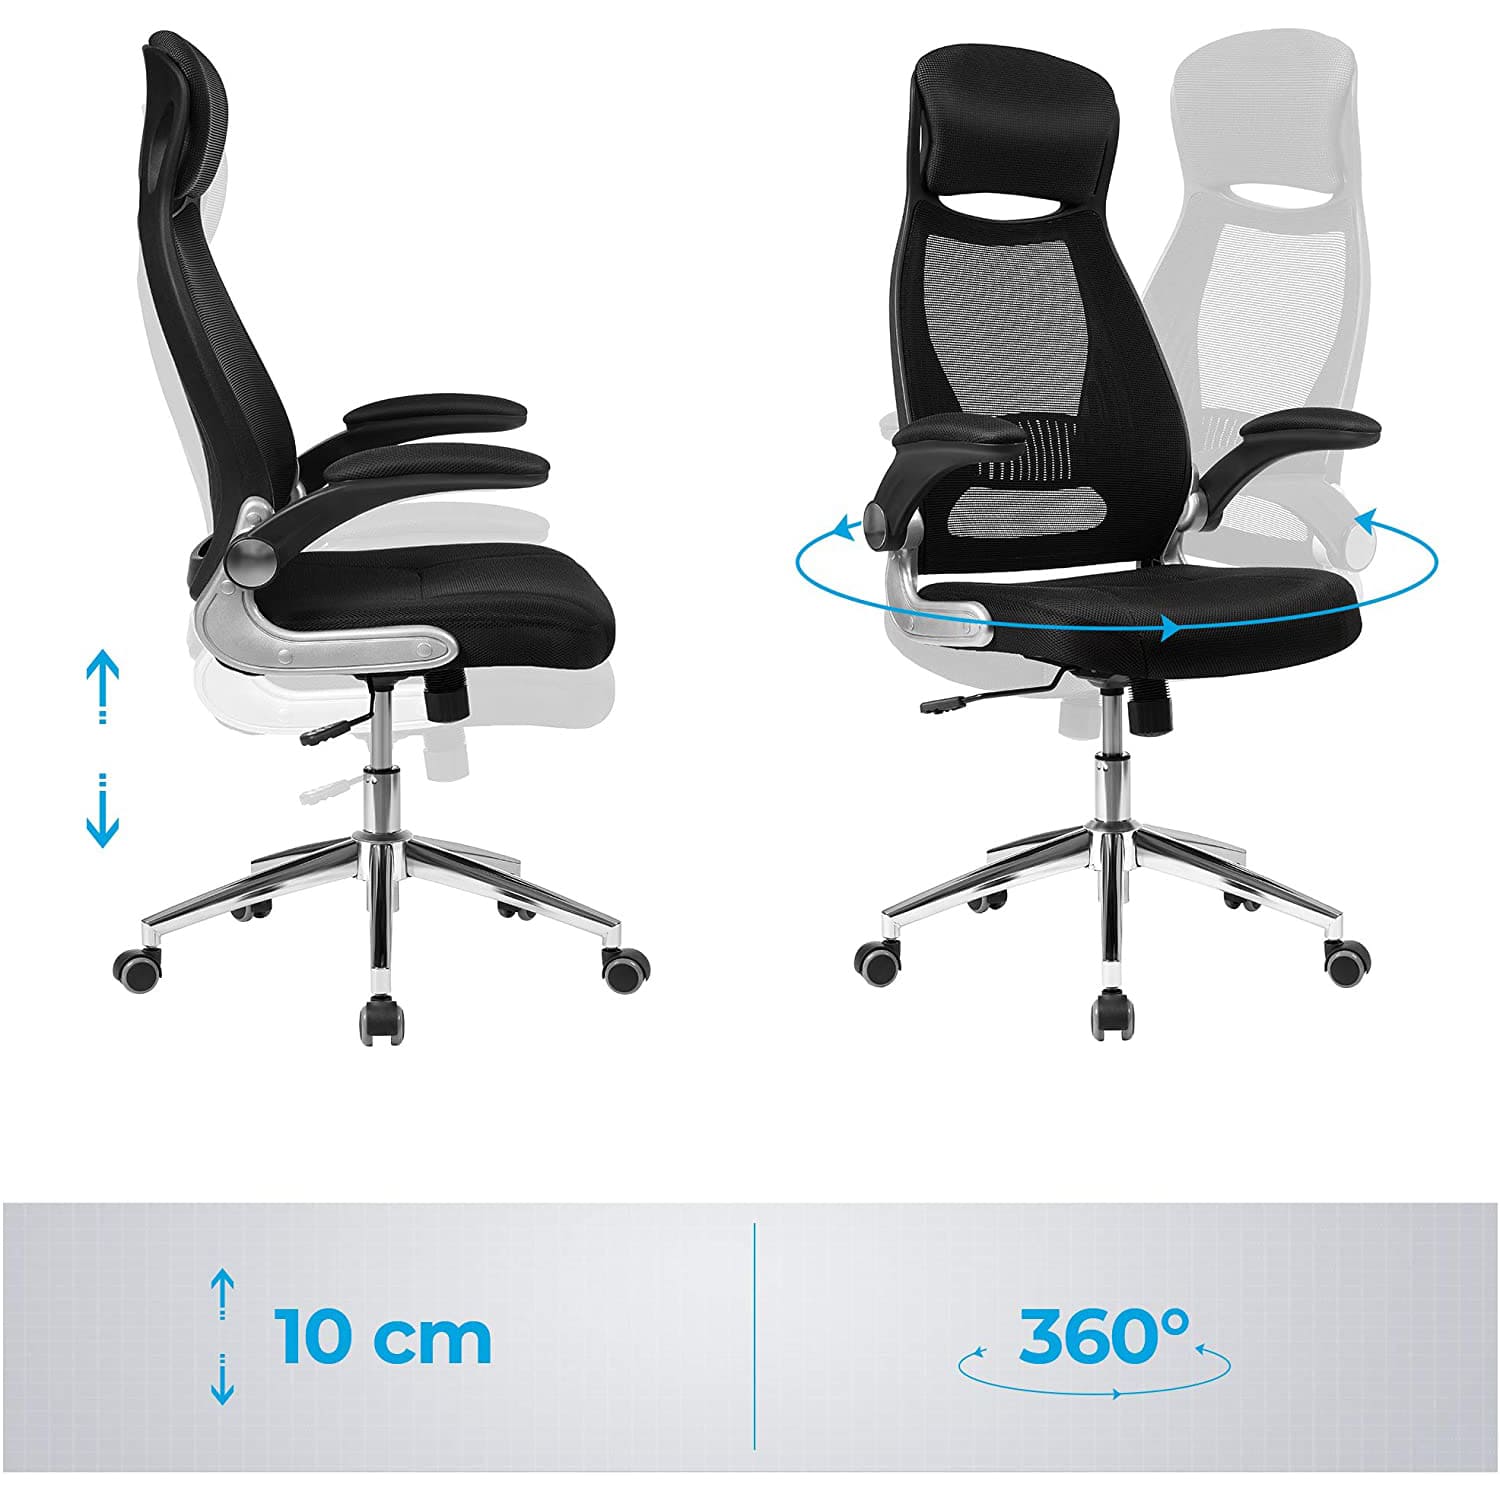 SONGMICS - Sedia da ufficio, regolabile in altezza - 10 cm, girevole a 360 °, schienale reclinabile